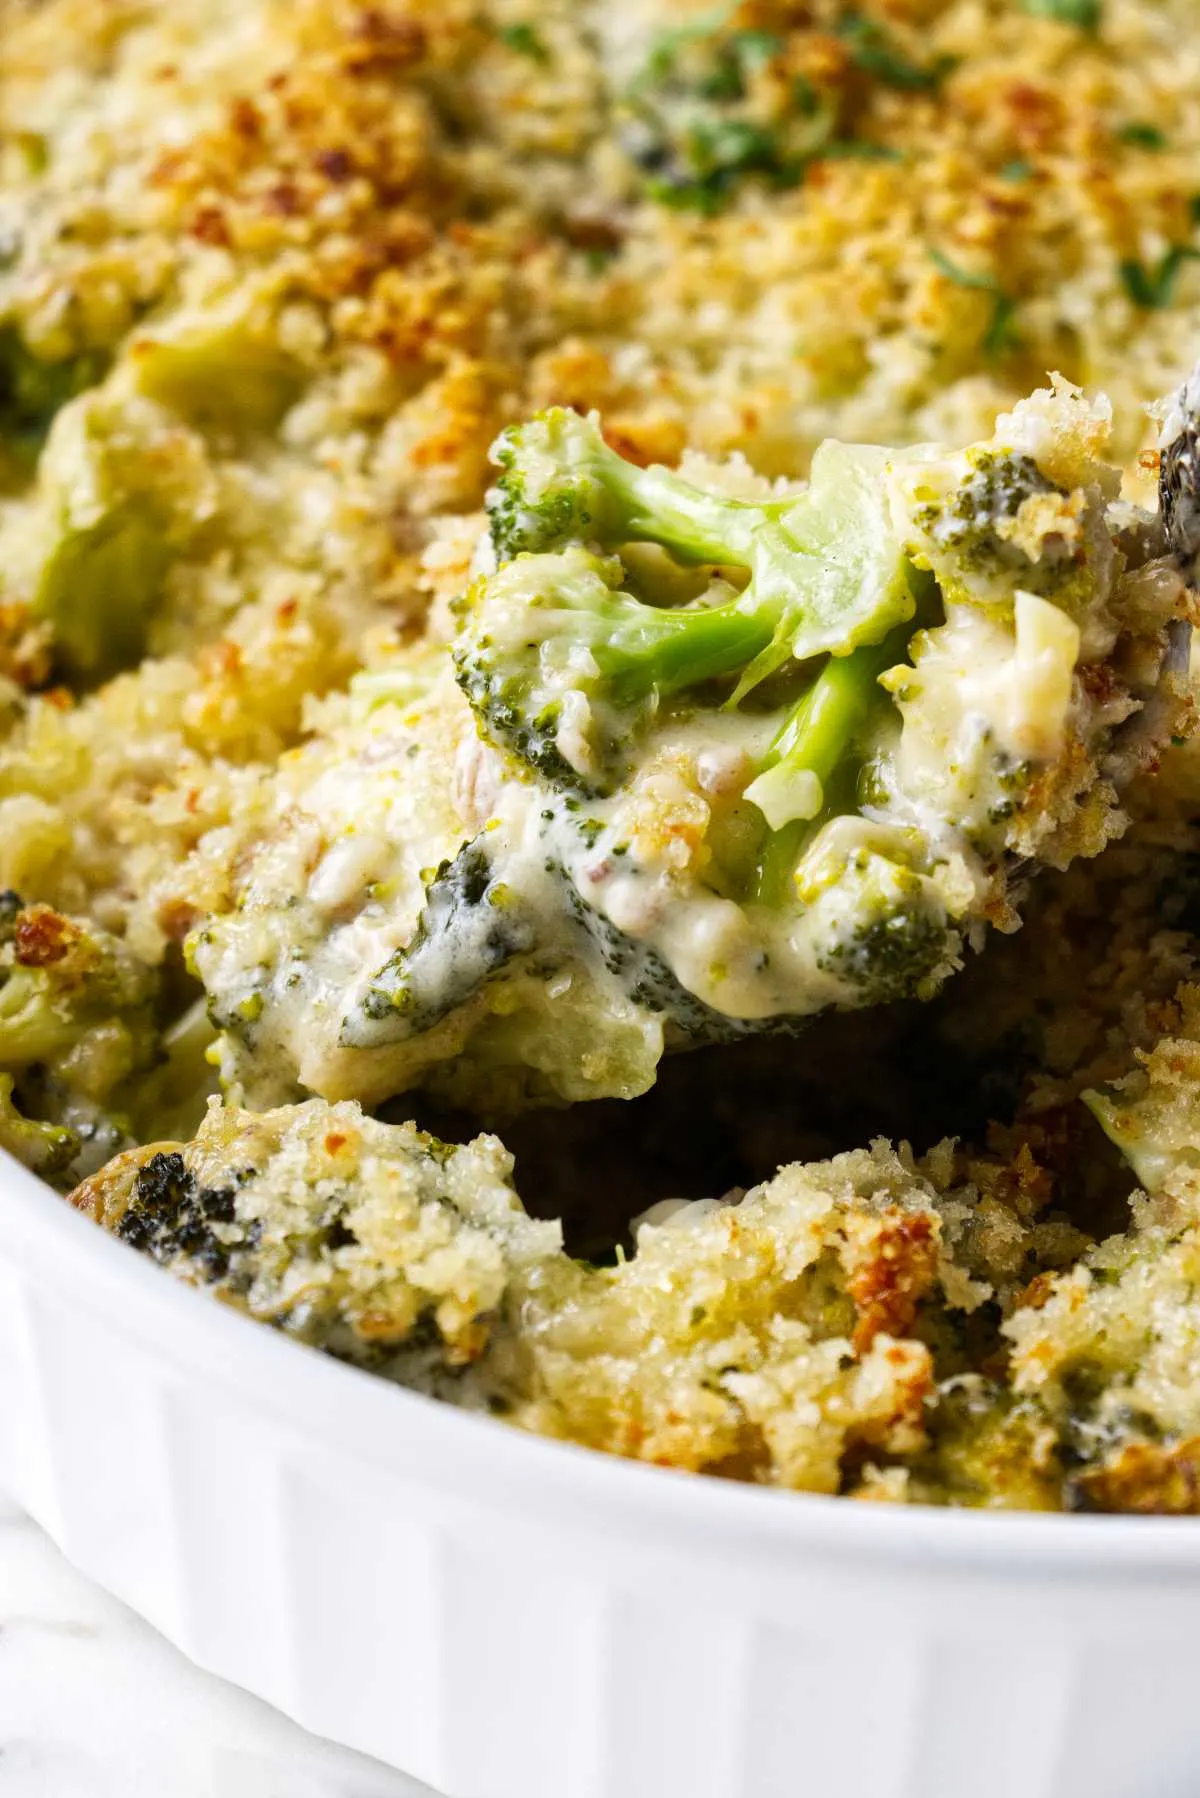 A casserole dish of creamy broccoli casserole.